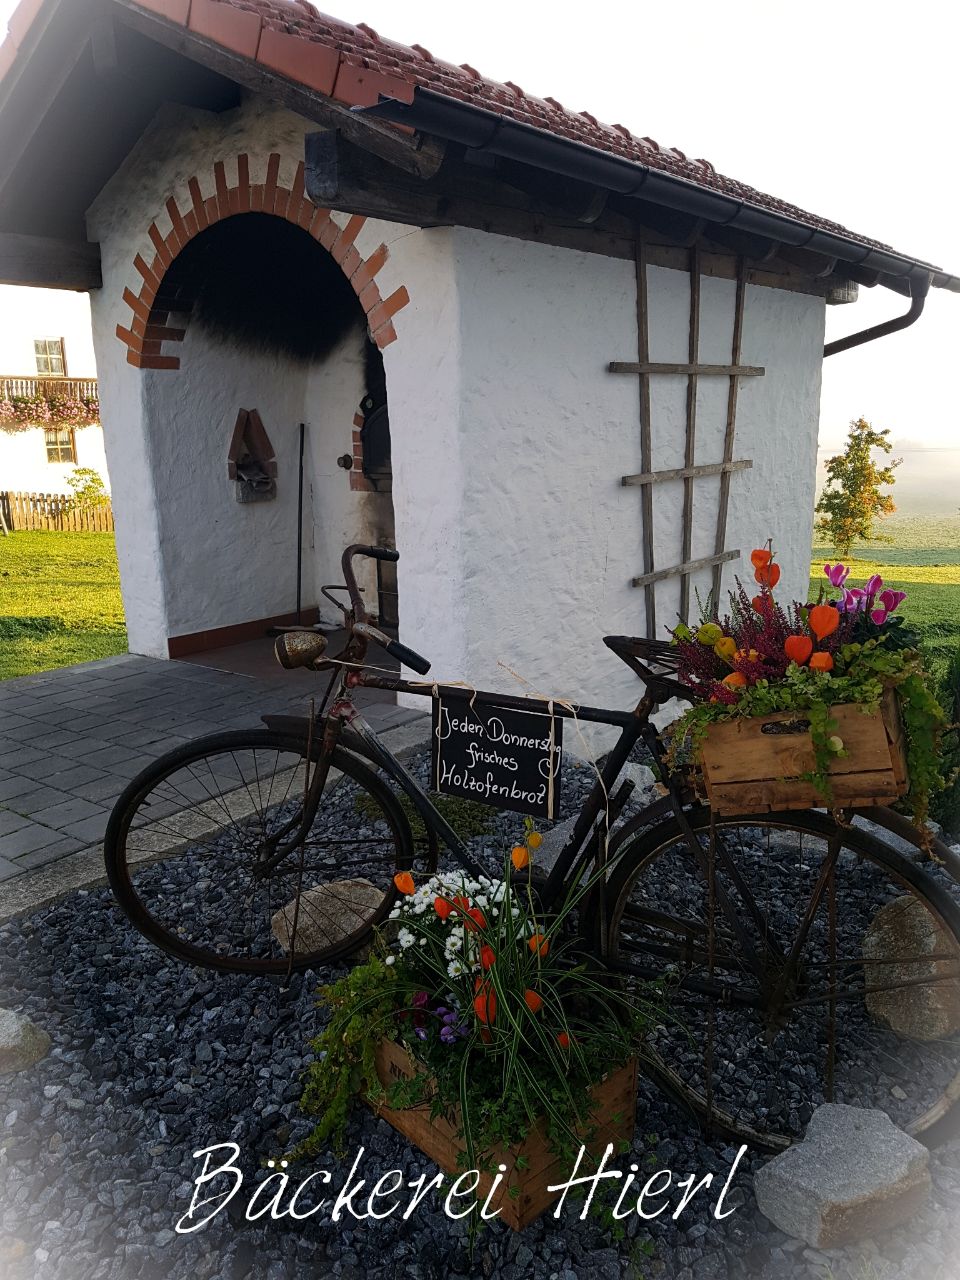 Holzbackofen mit einem alten Fahrrad dafür.
An der oberen Stande des Fahrrades wurde ein Schild mit der Aufschrift Jeden Donnerstag frisches Holzofenbrot befestigt. Auf dem Gepäckträger und vor dem Fahrrad steht eine Kiste mit Blumen.